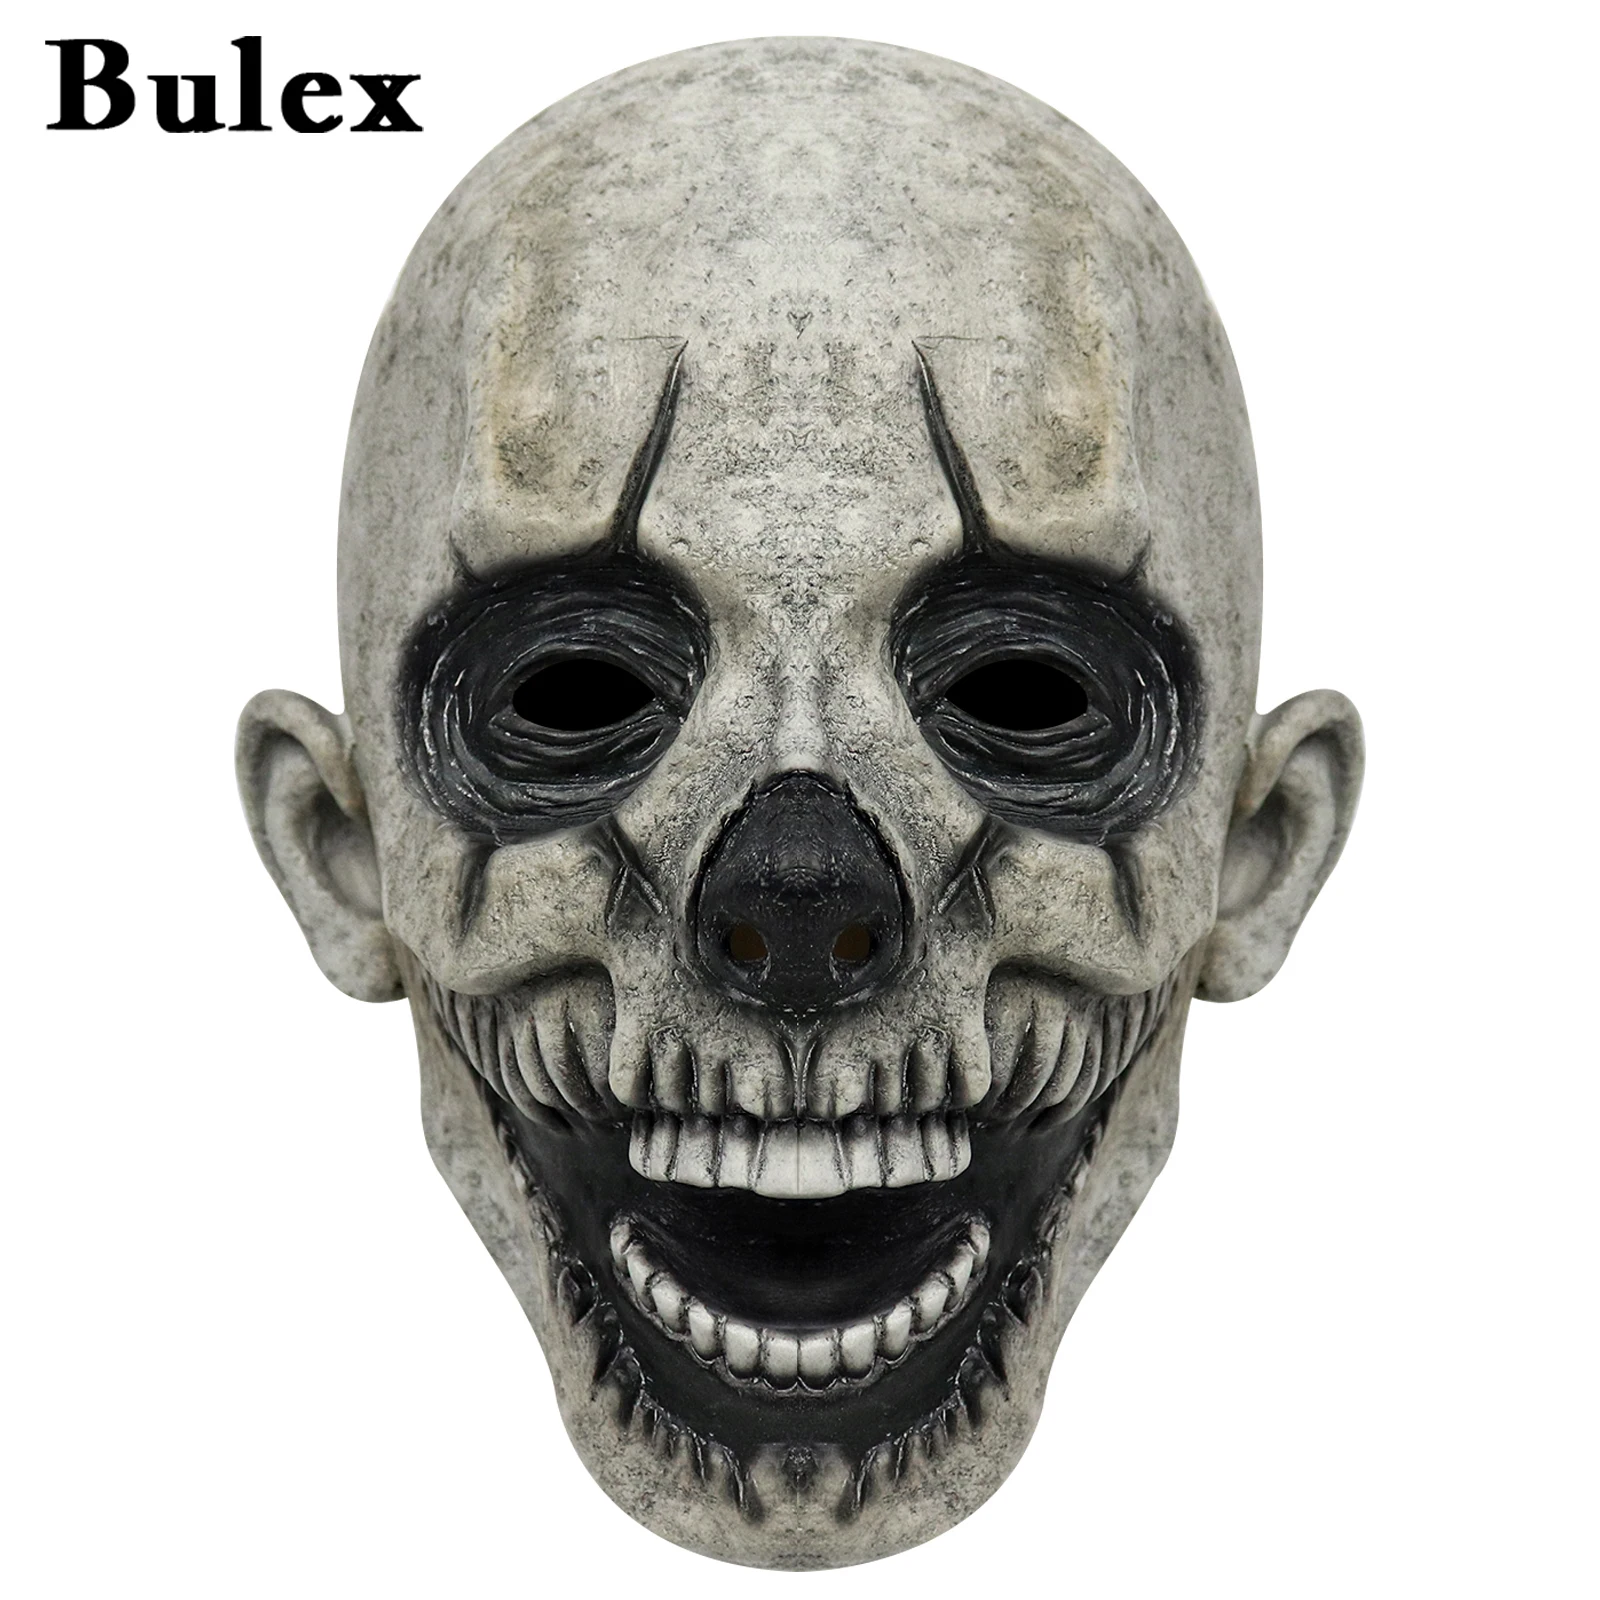 

Латексная Маска Bulex, ужасное искусство, маски клоуна для косплея, шлем на все лицо из ужасов, костюмы на Хэллоуин, аксессуары, реквизит для ка...